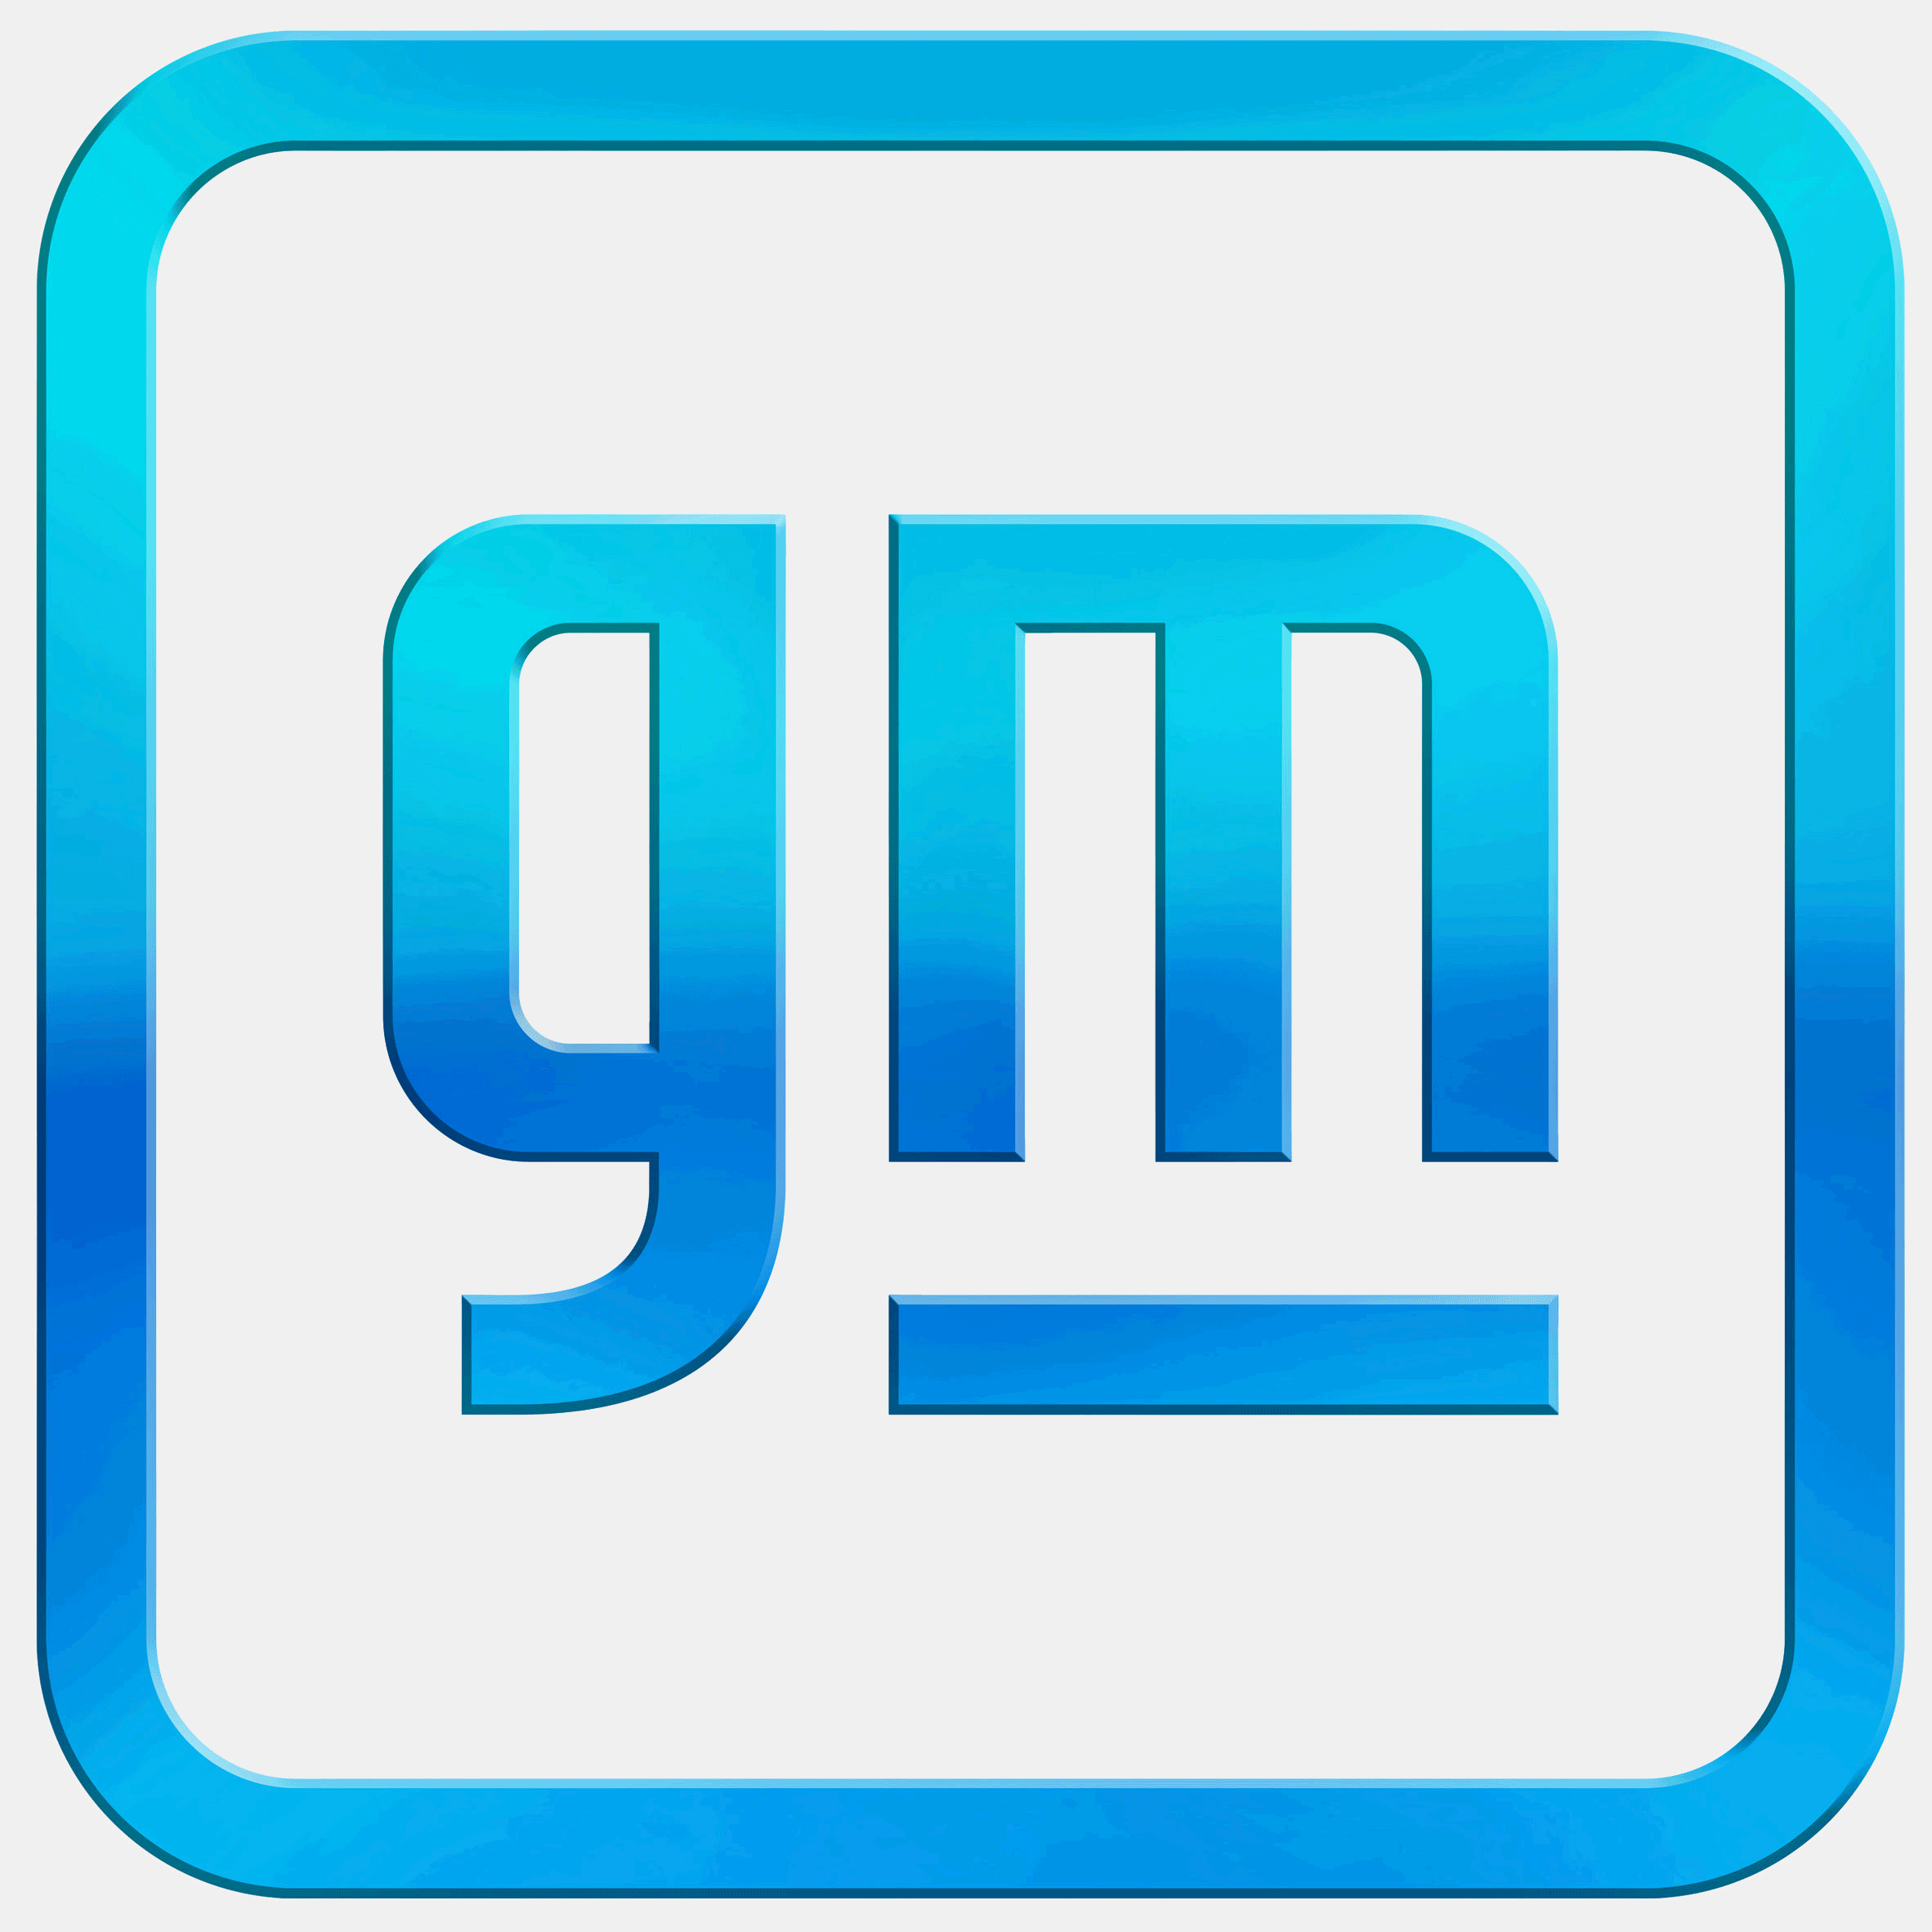 Desain ulang logo General Motors 2021